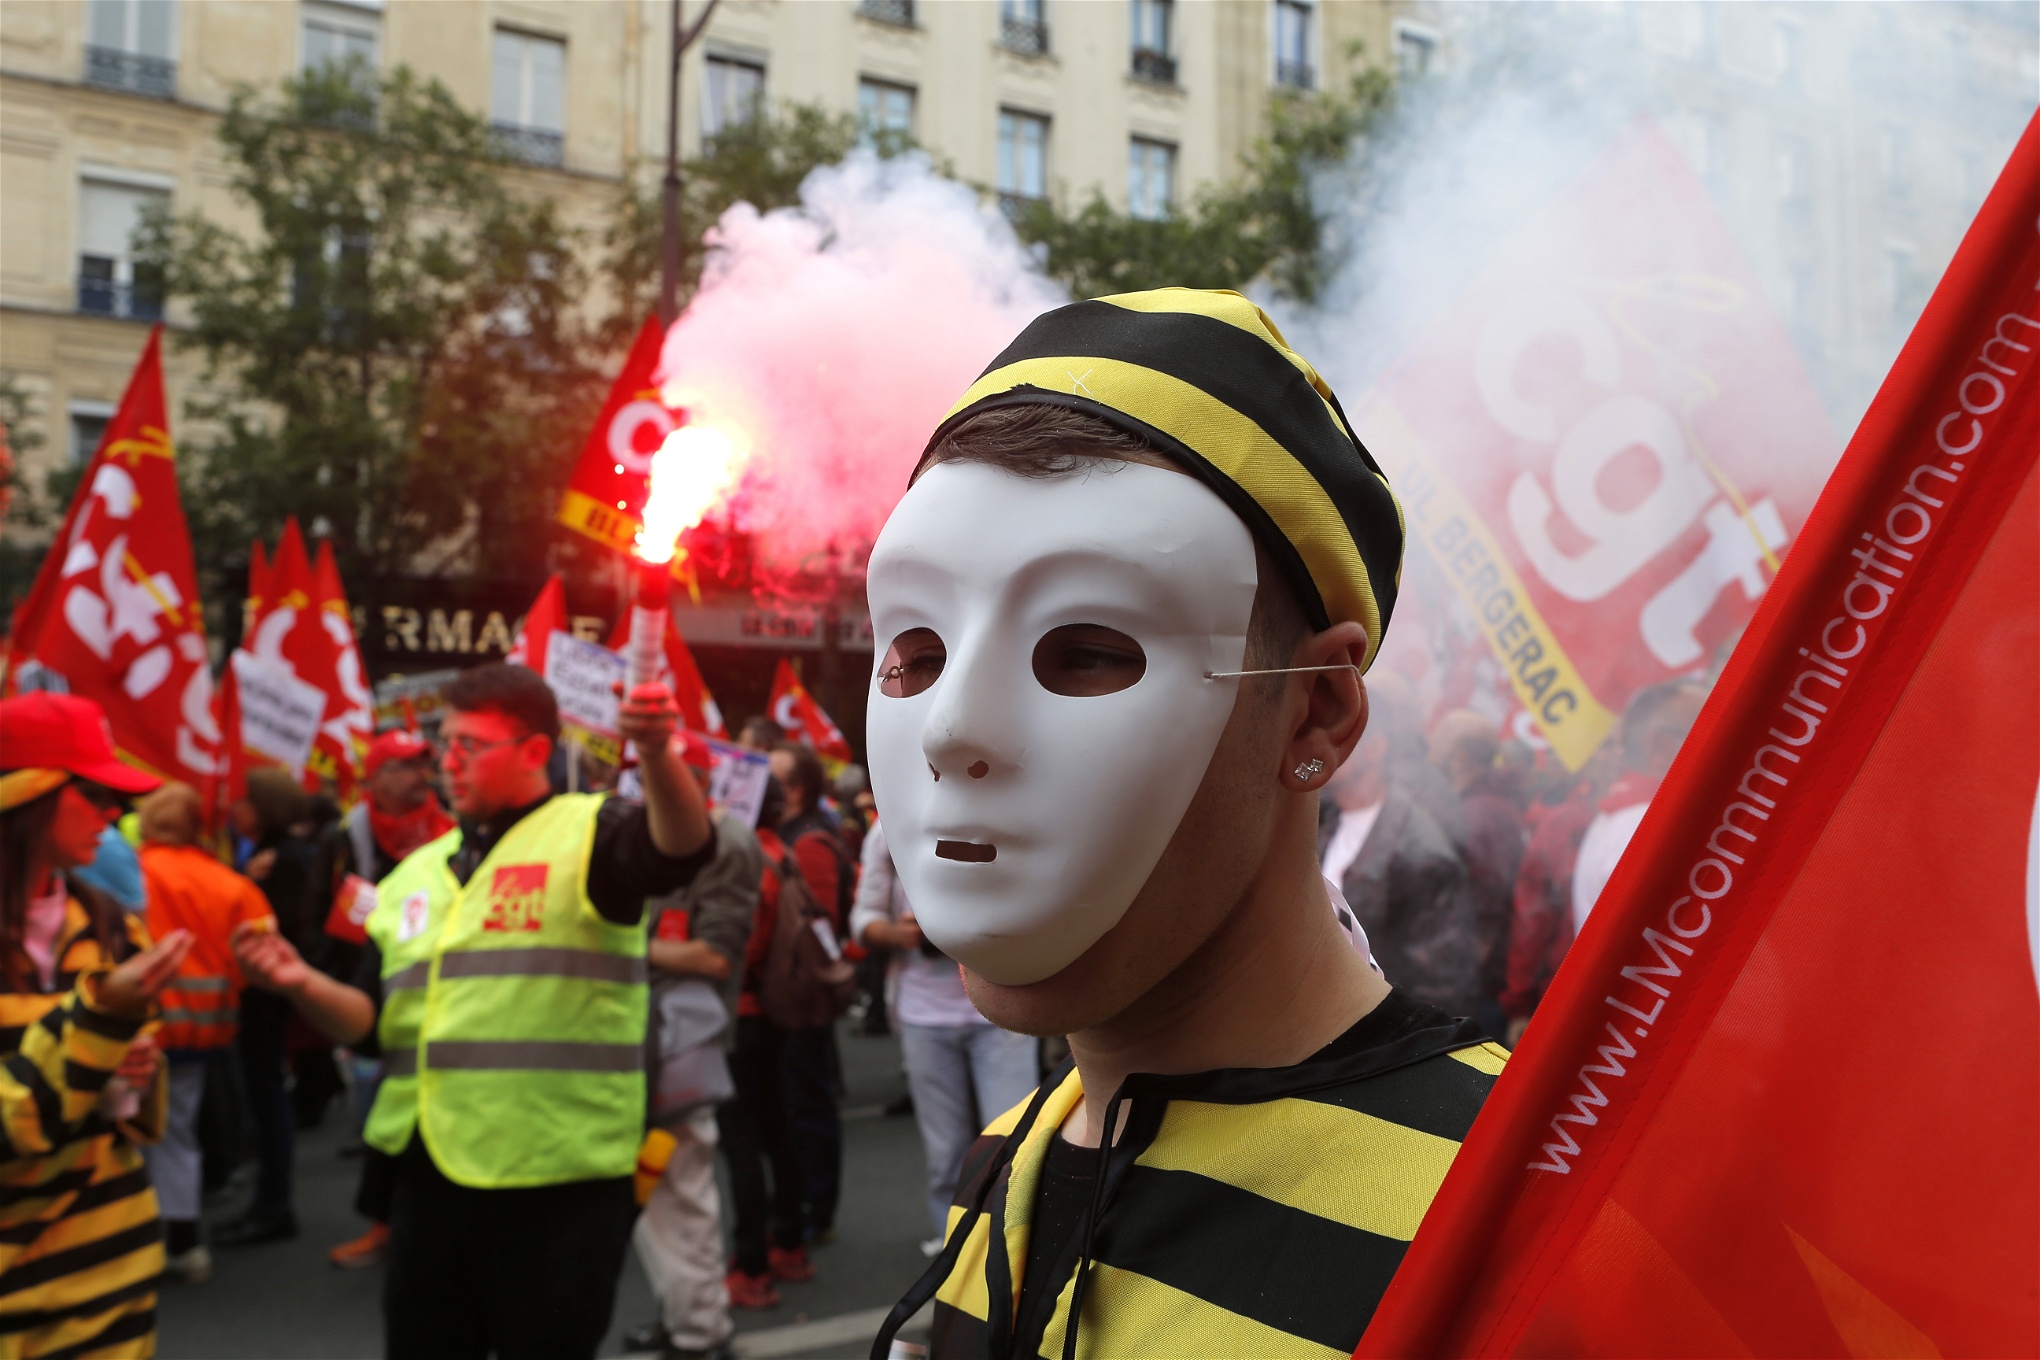 Det franska socialistpartiet har, samtidigt som det lagt om kursen mot mitten, msslyckats med att vända arbetslösheten och problemen med ekonomin, enligt Tomas Lindbom. Bild från protester i Paris den 14 juni.